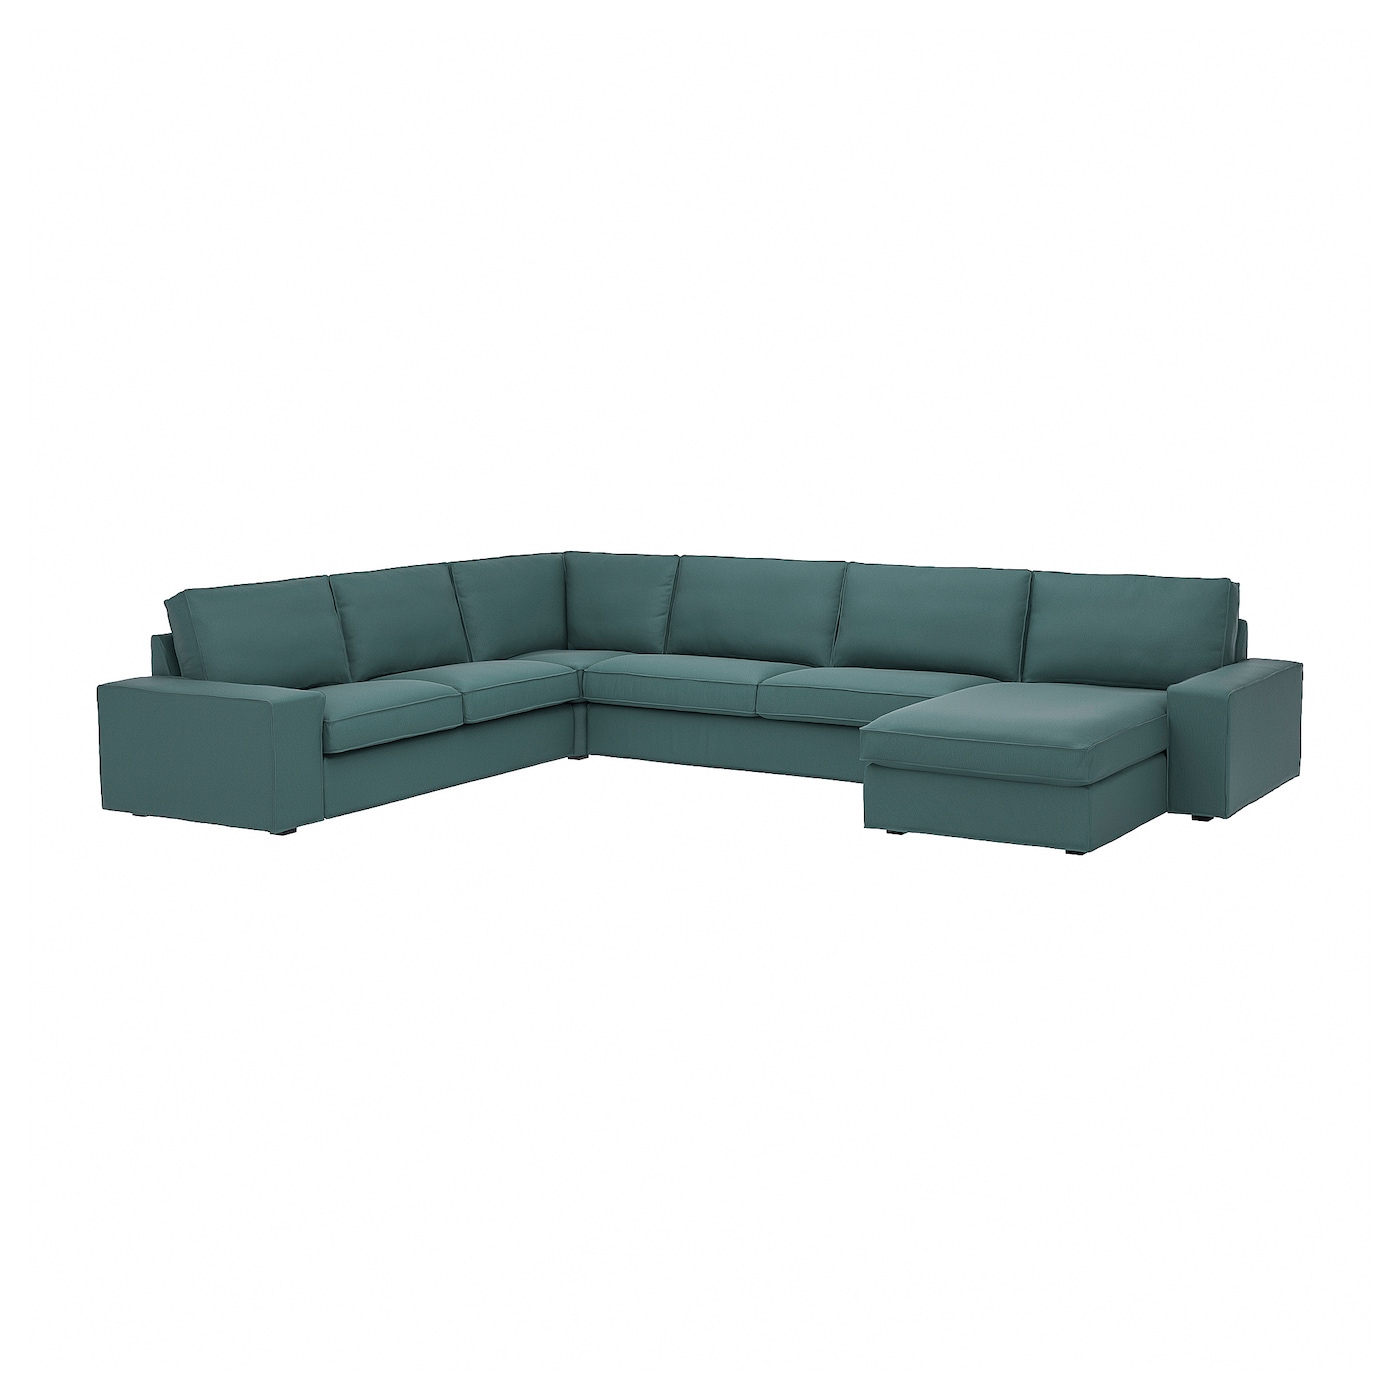 6-местный угловой диван и кушетка - IKEA KIVIK, 83x60x257/387см, зеленый, КИВИК ИКЕА